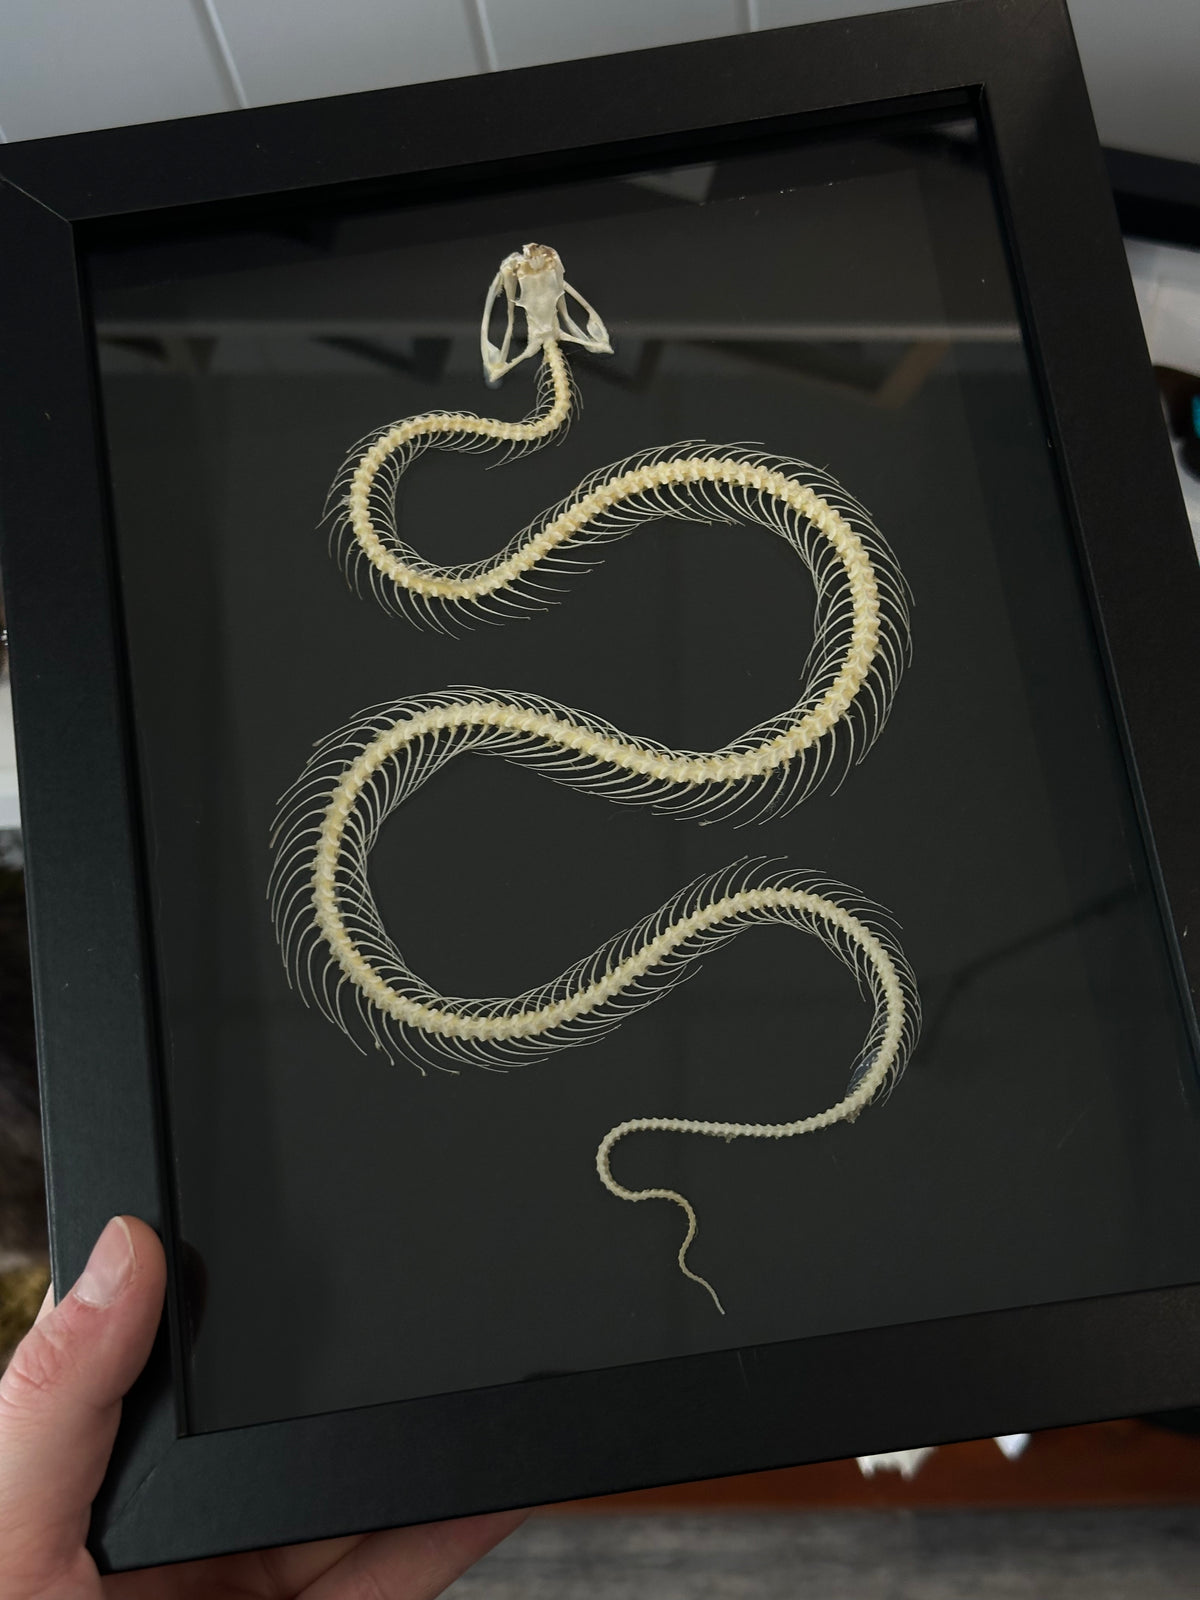 Snake Skeleton / White-Lipped Pit Viper in a frame #3